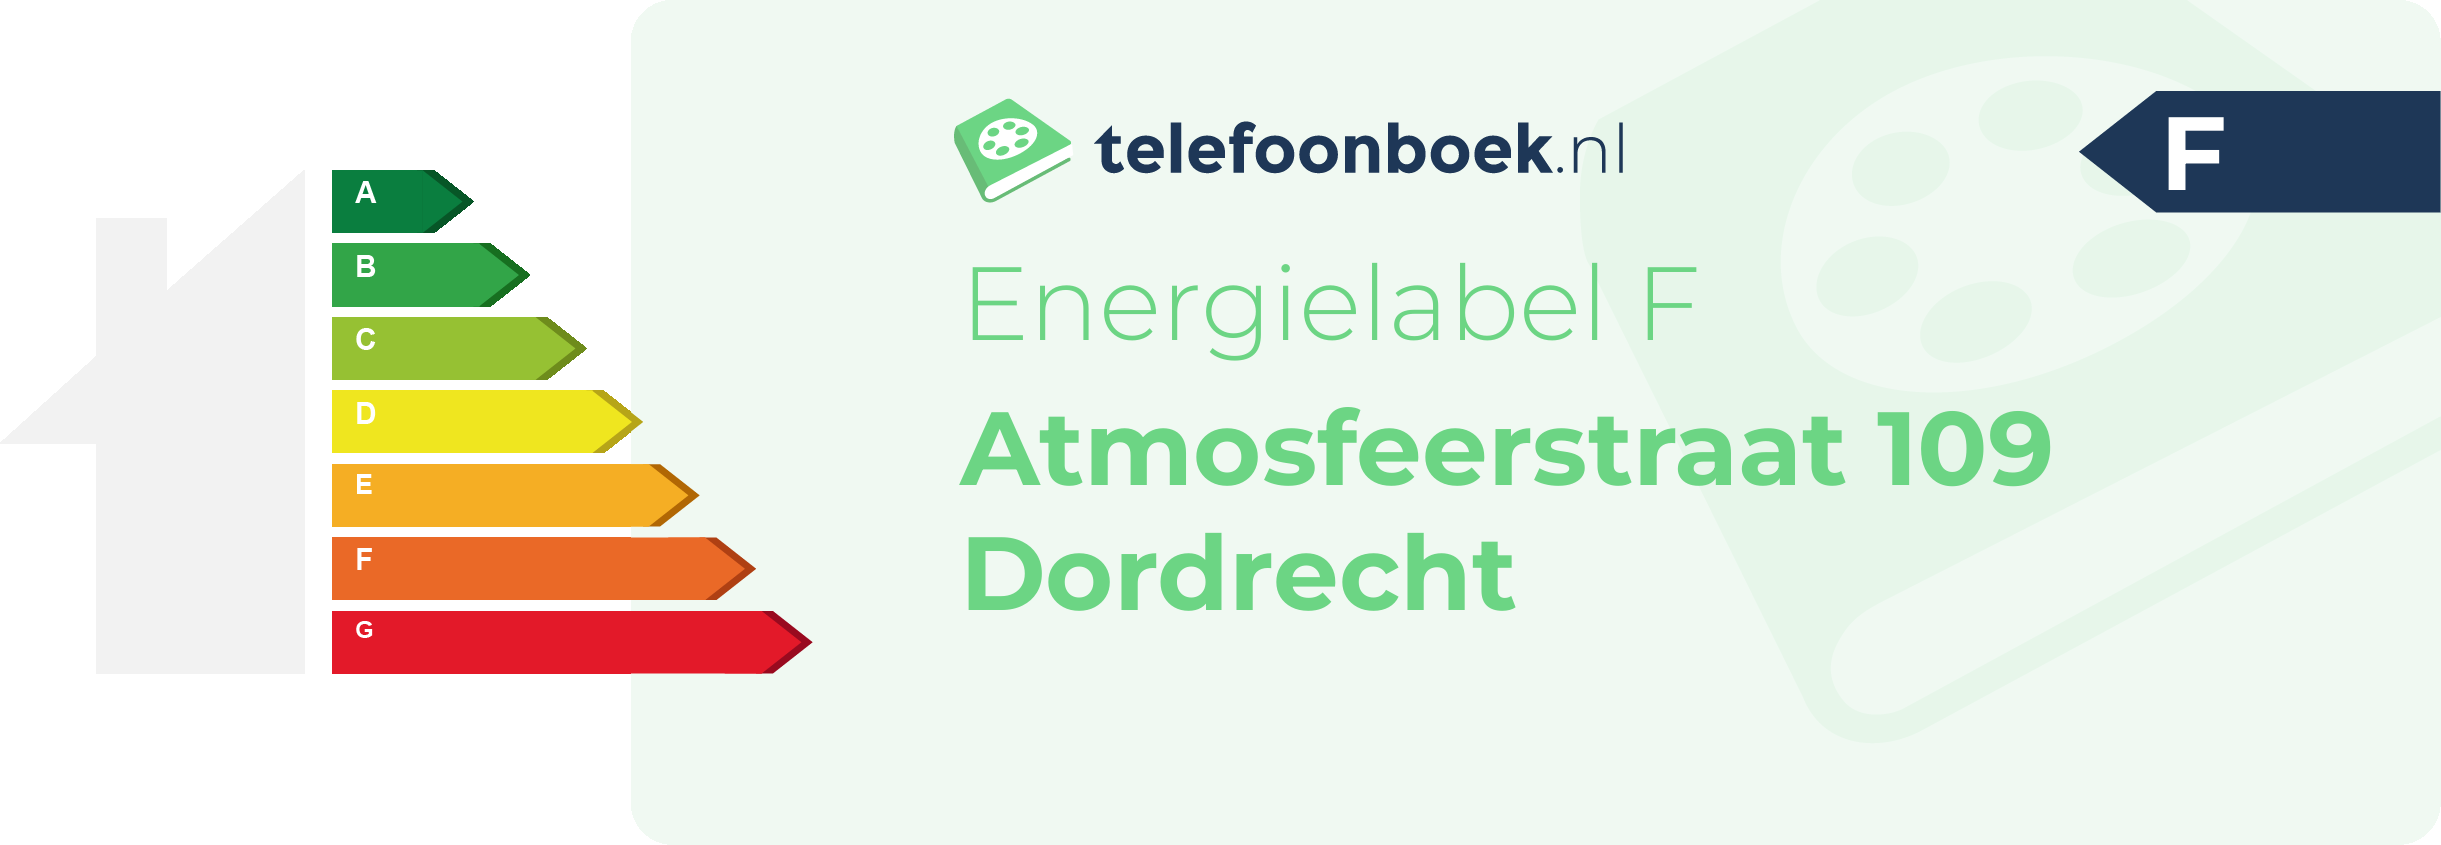 Energielabel Atmosfeerstraat 109 Dordrecht